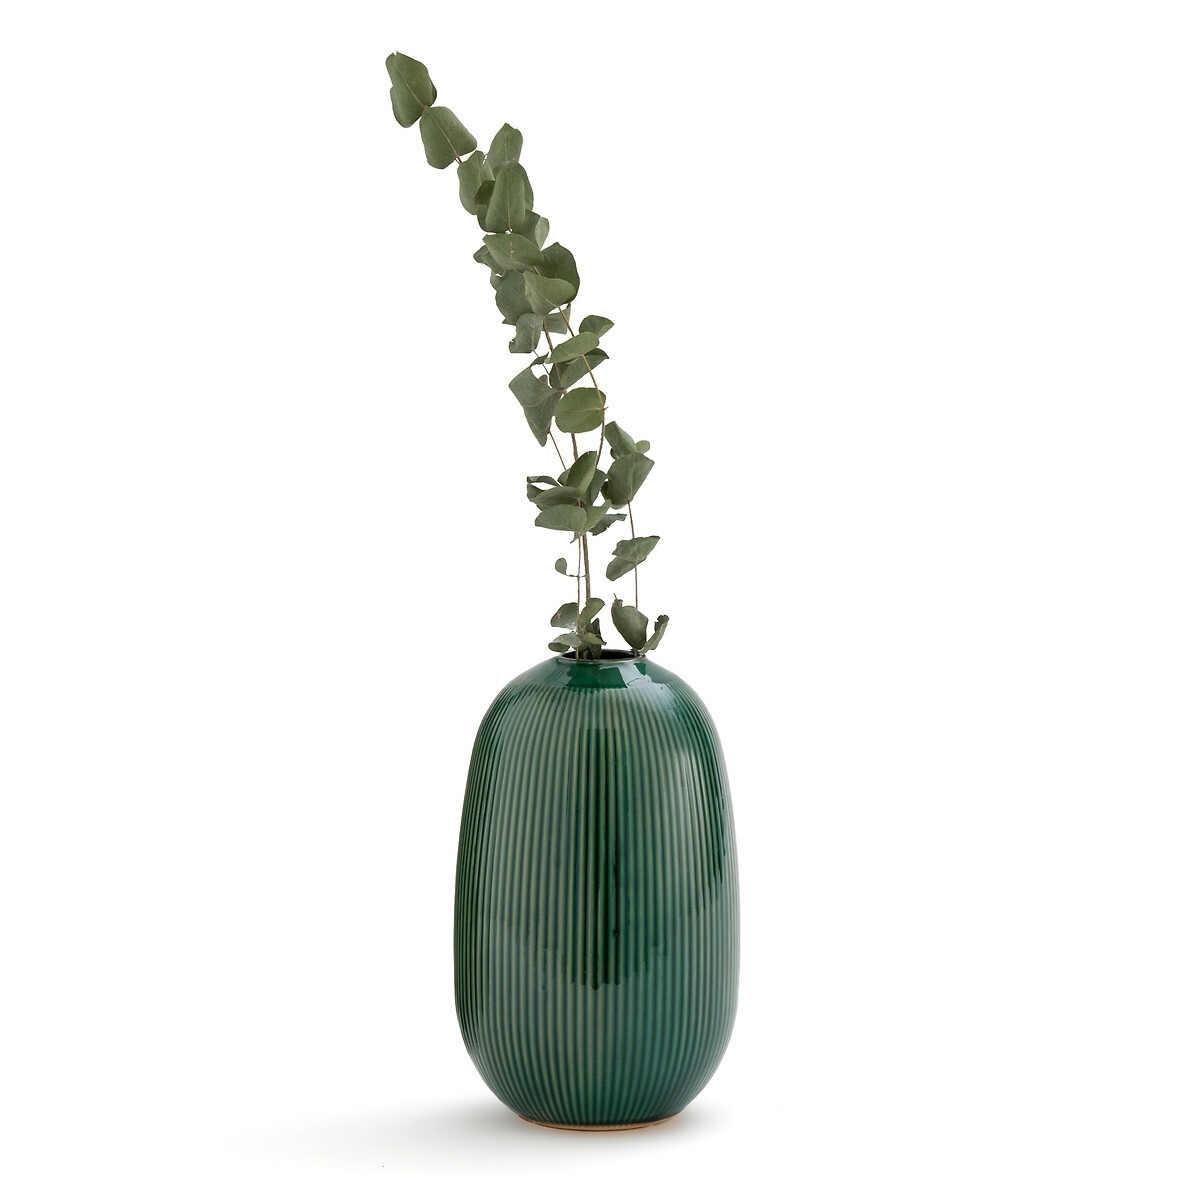 Estria 26cm High Ceramic Vase. - image 1